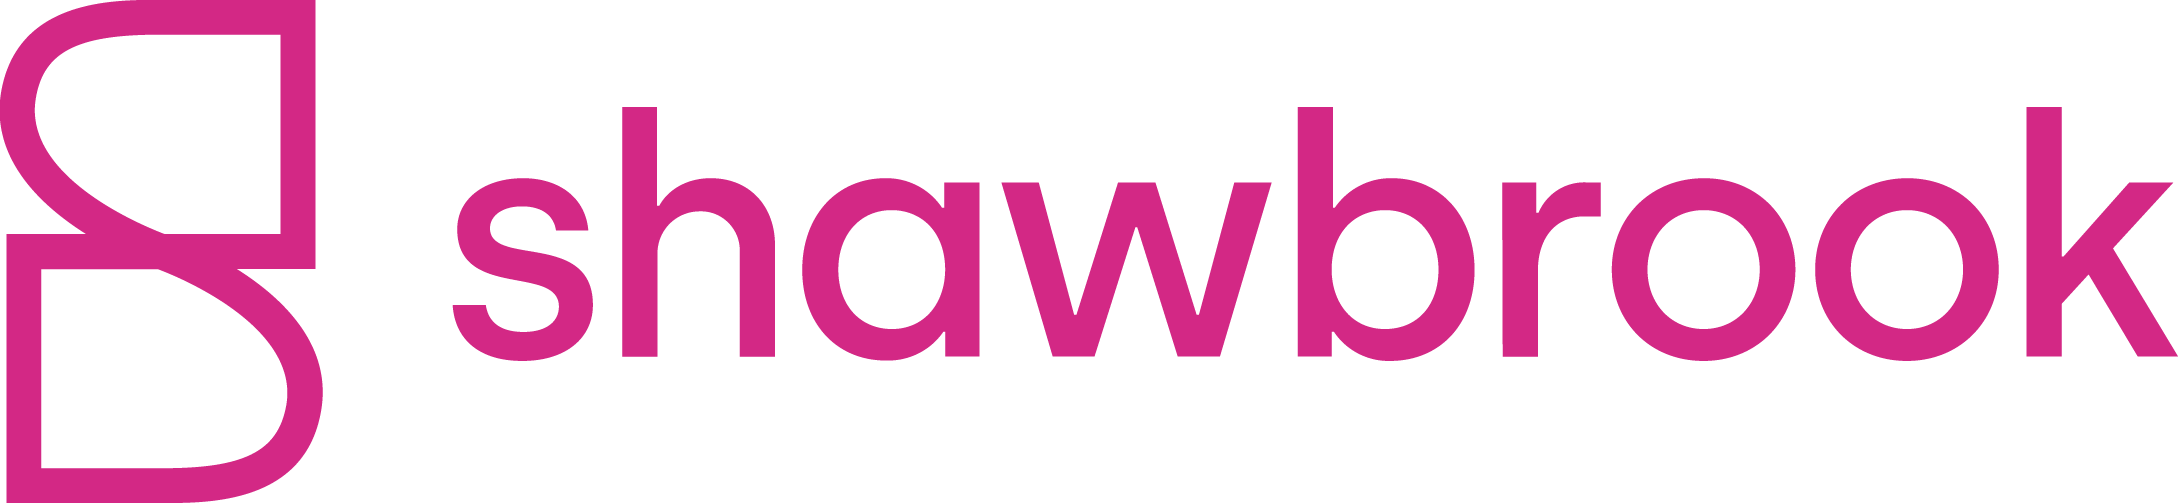 Shawbrook-logo